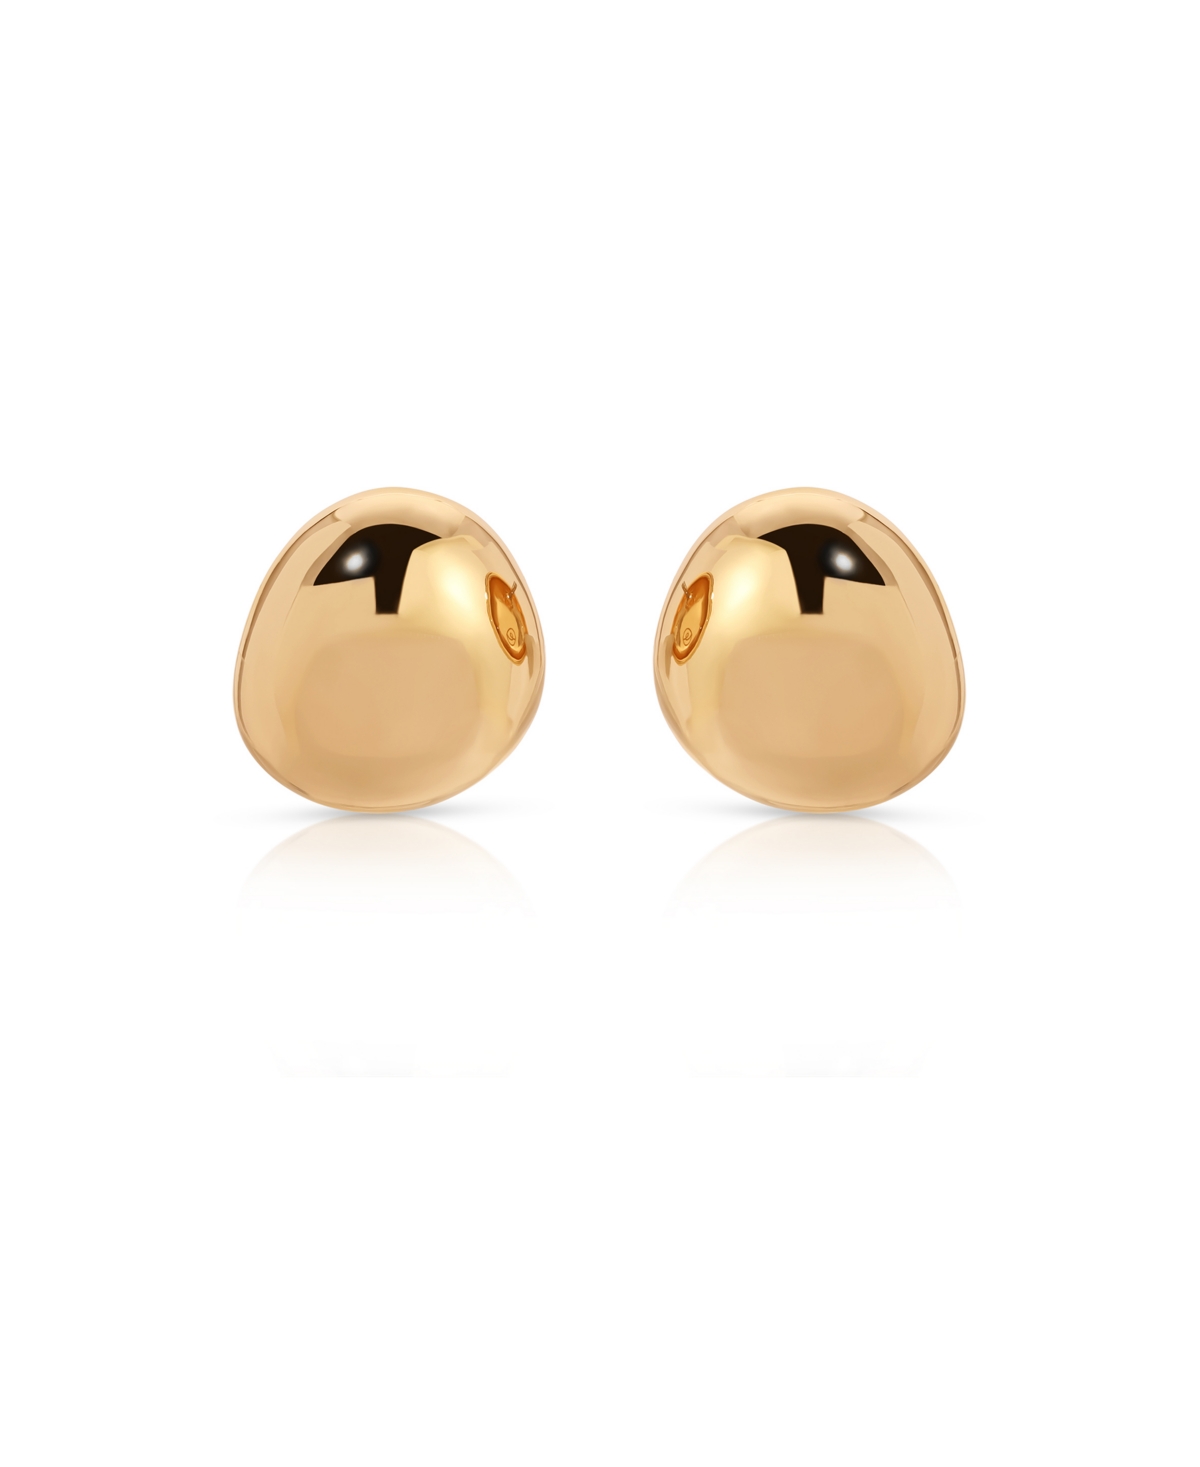 Polished Pebble Stud Earrings - Rhodium